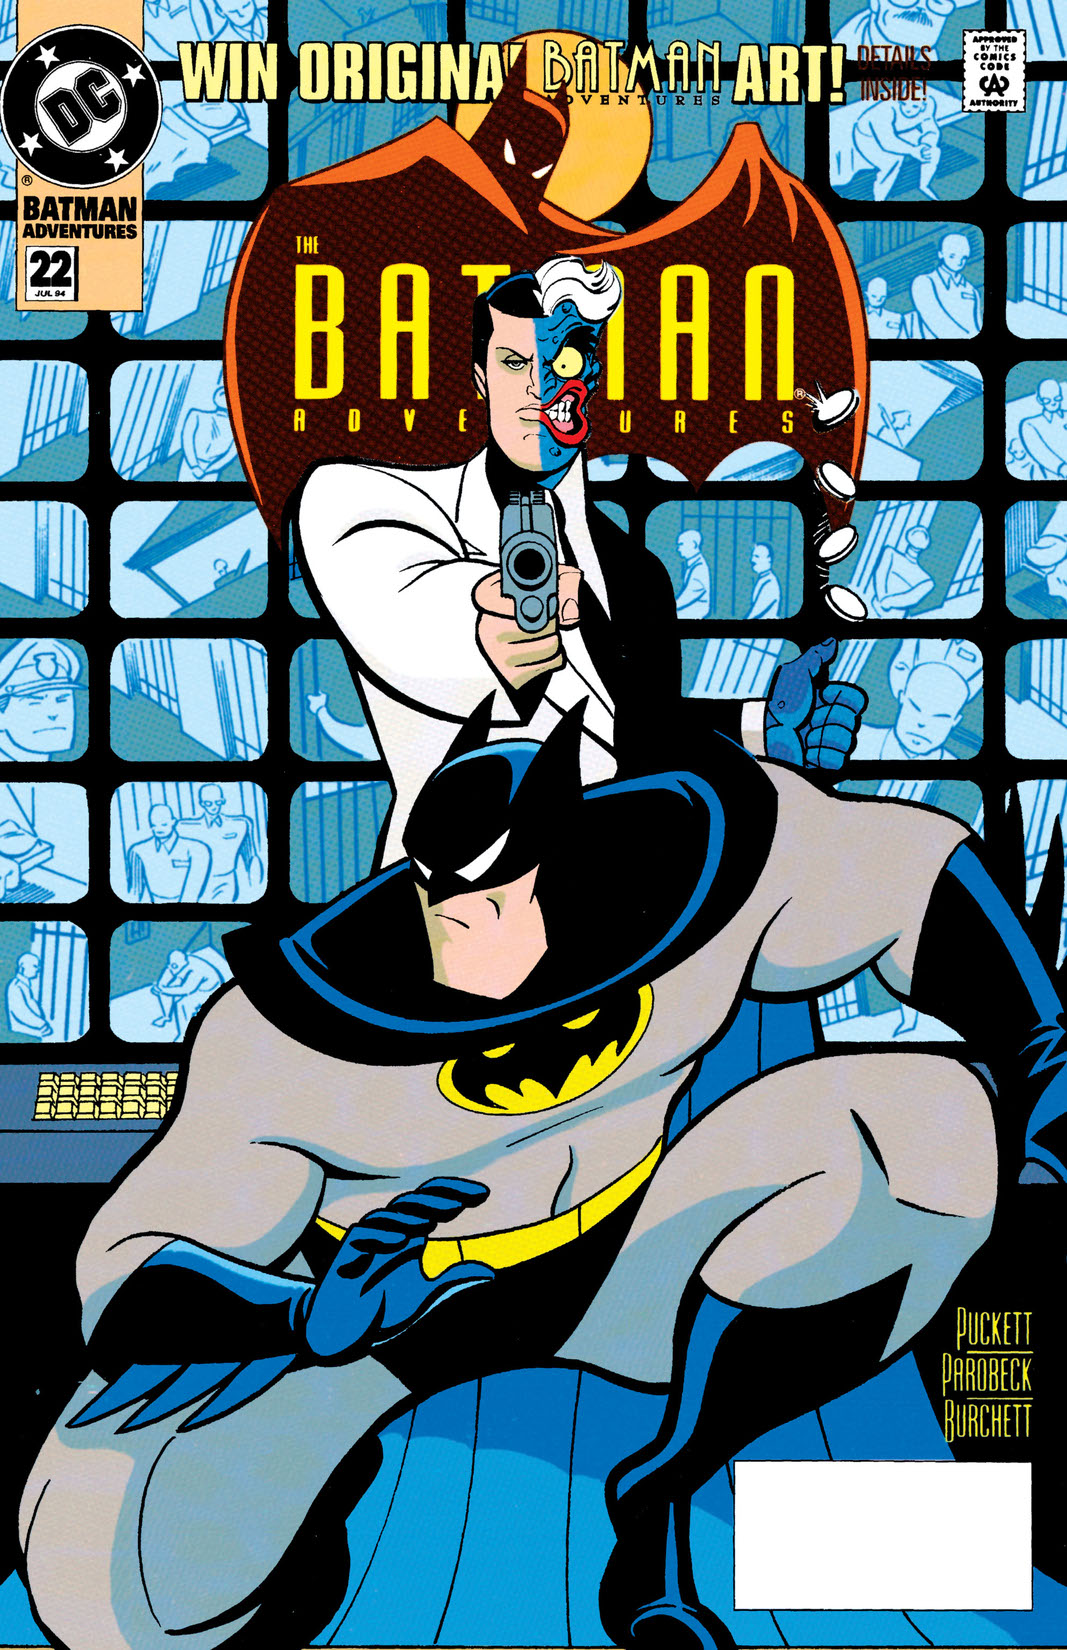 The Batman Adventures #22 preview images